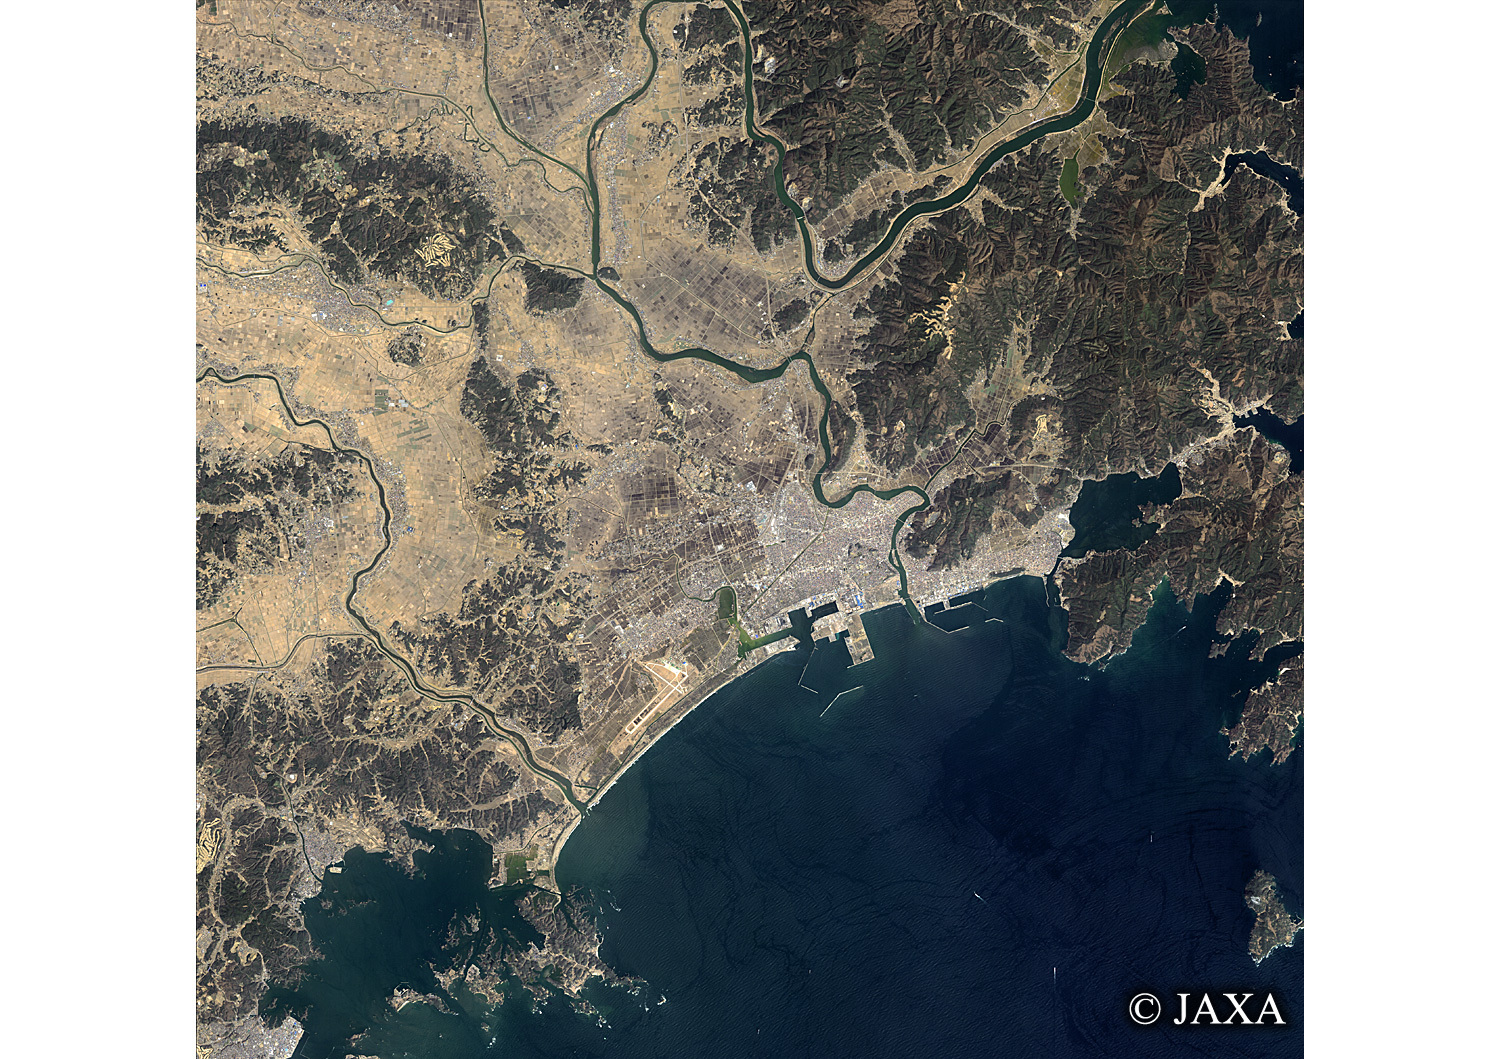 だいちから見た日本の都市 震災後の石巻市-東松島市:衛星画像